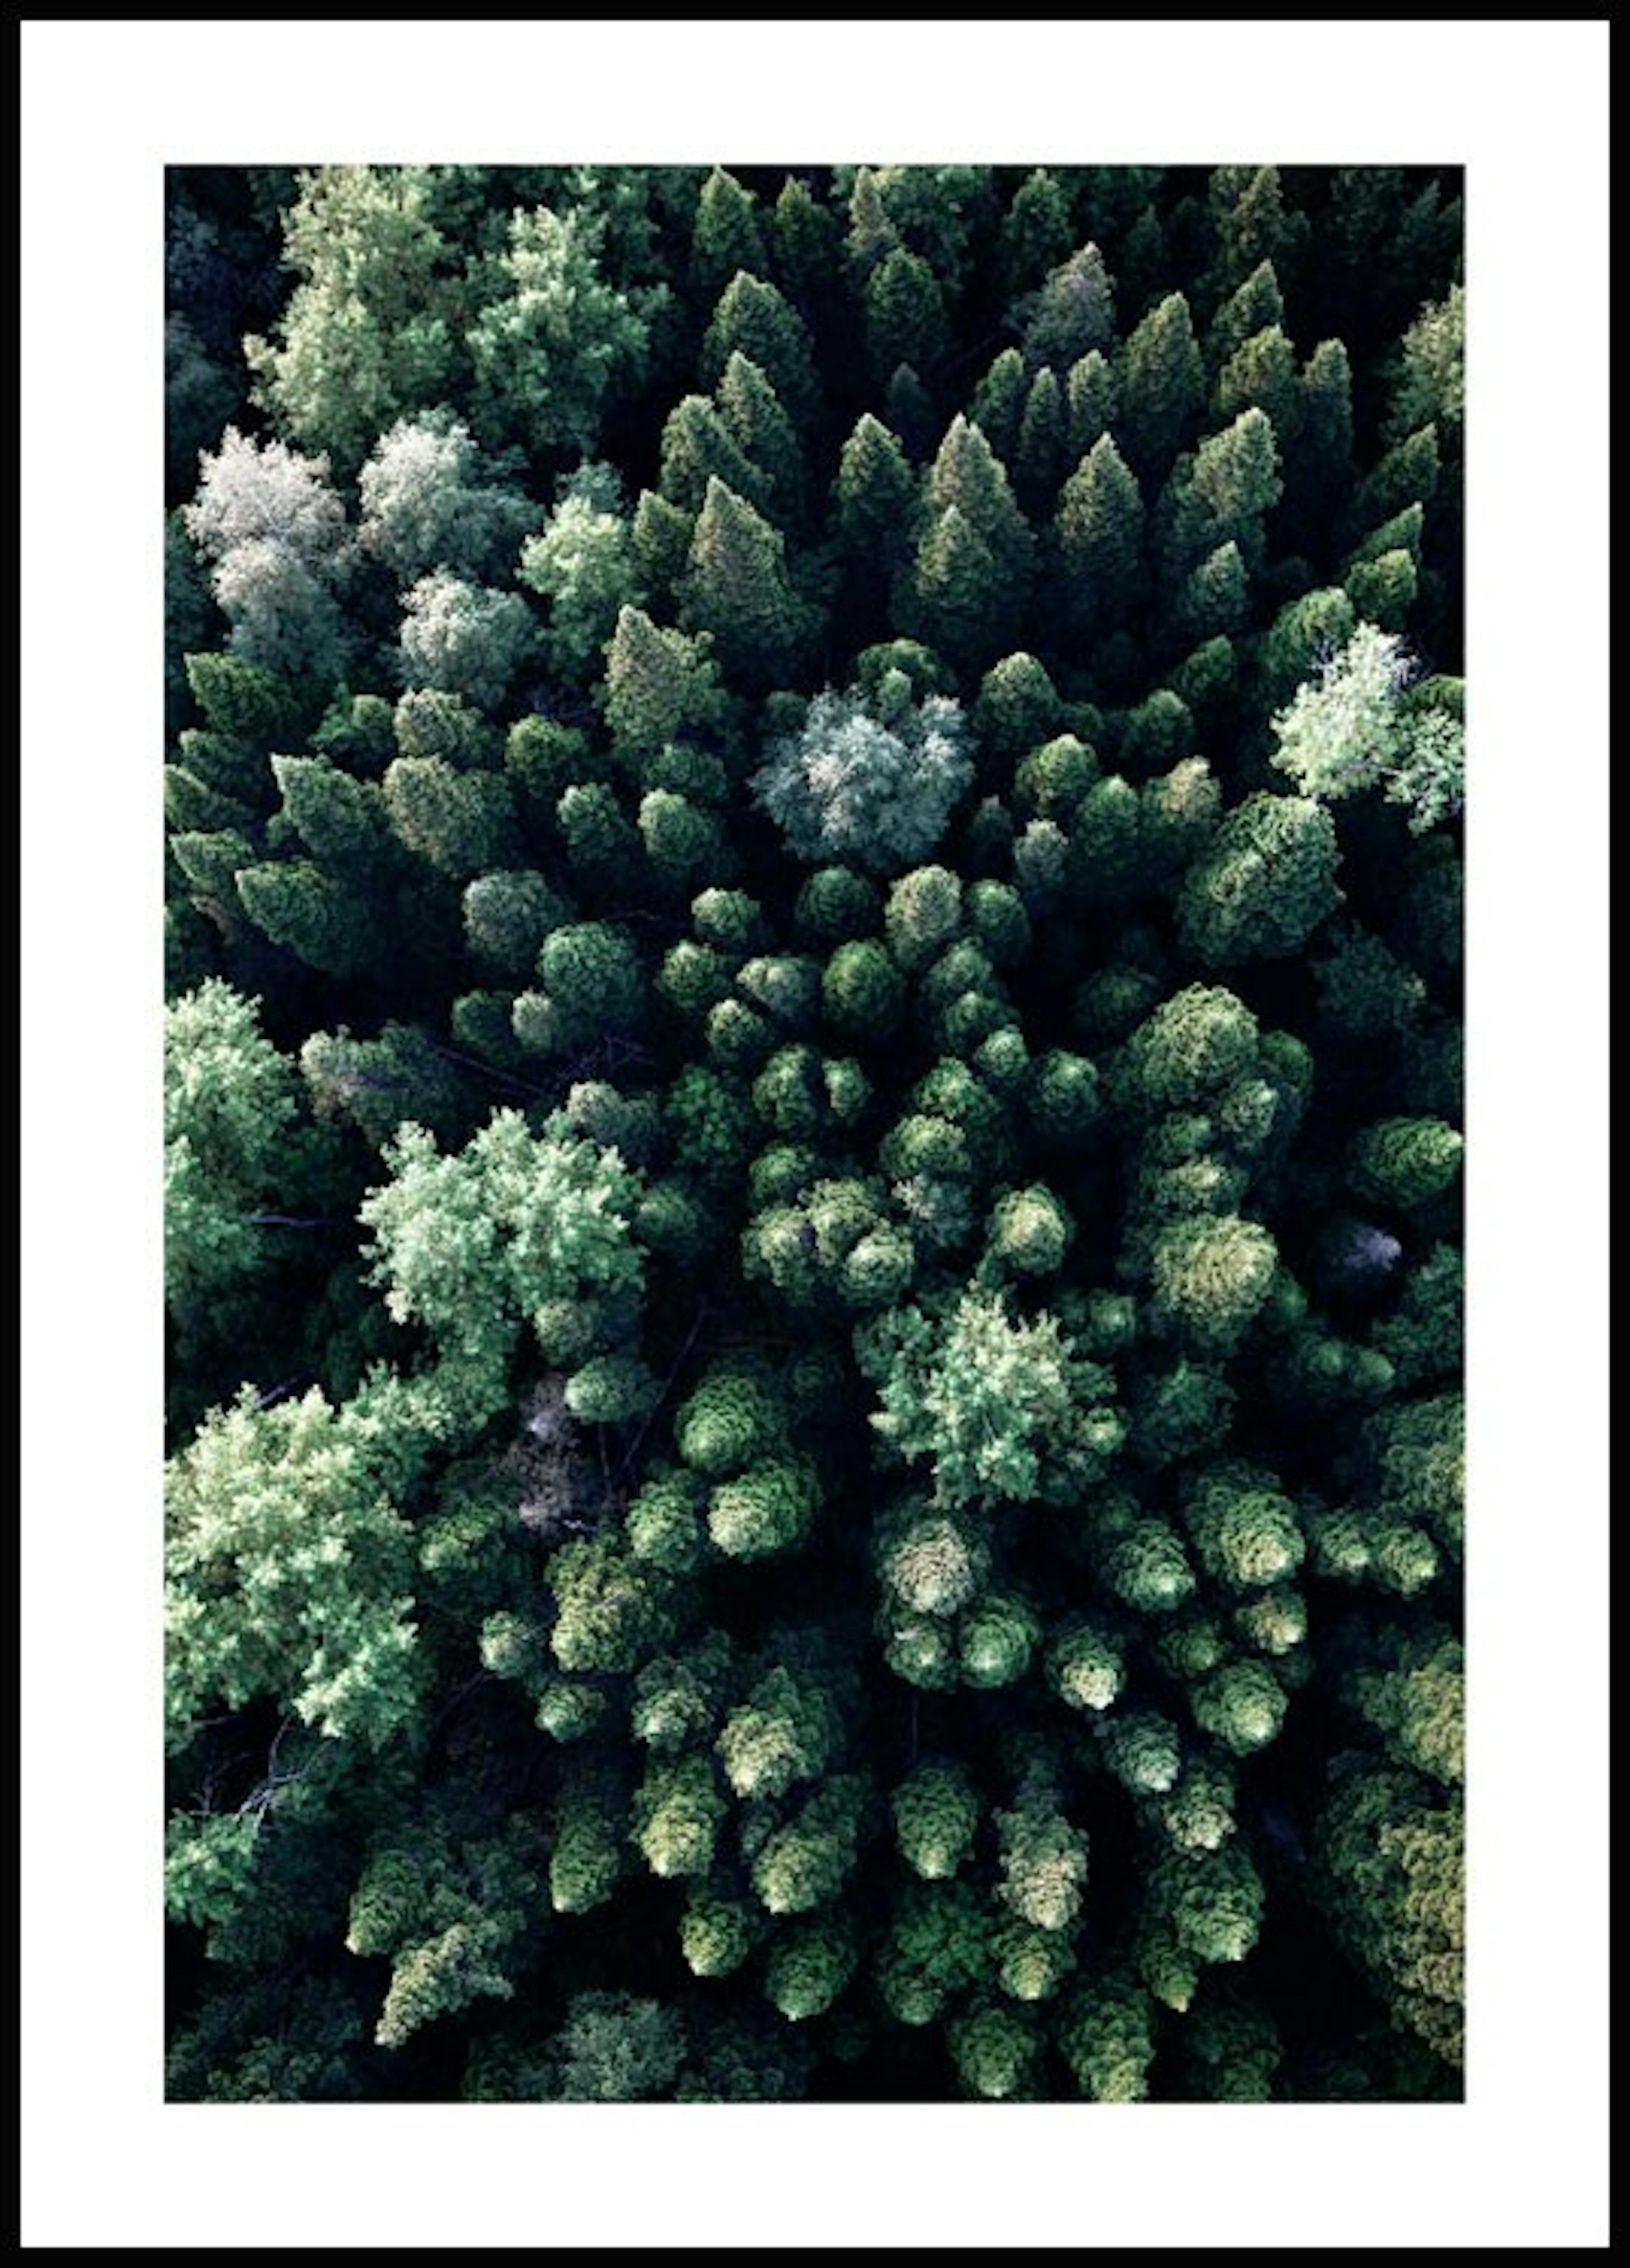 لوحة لصورة الغابة من فوق 0